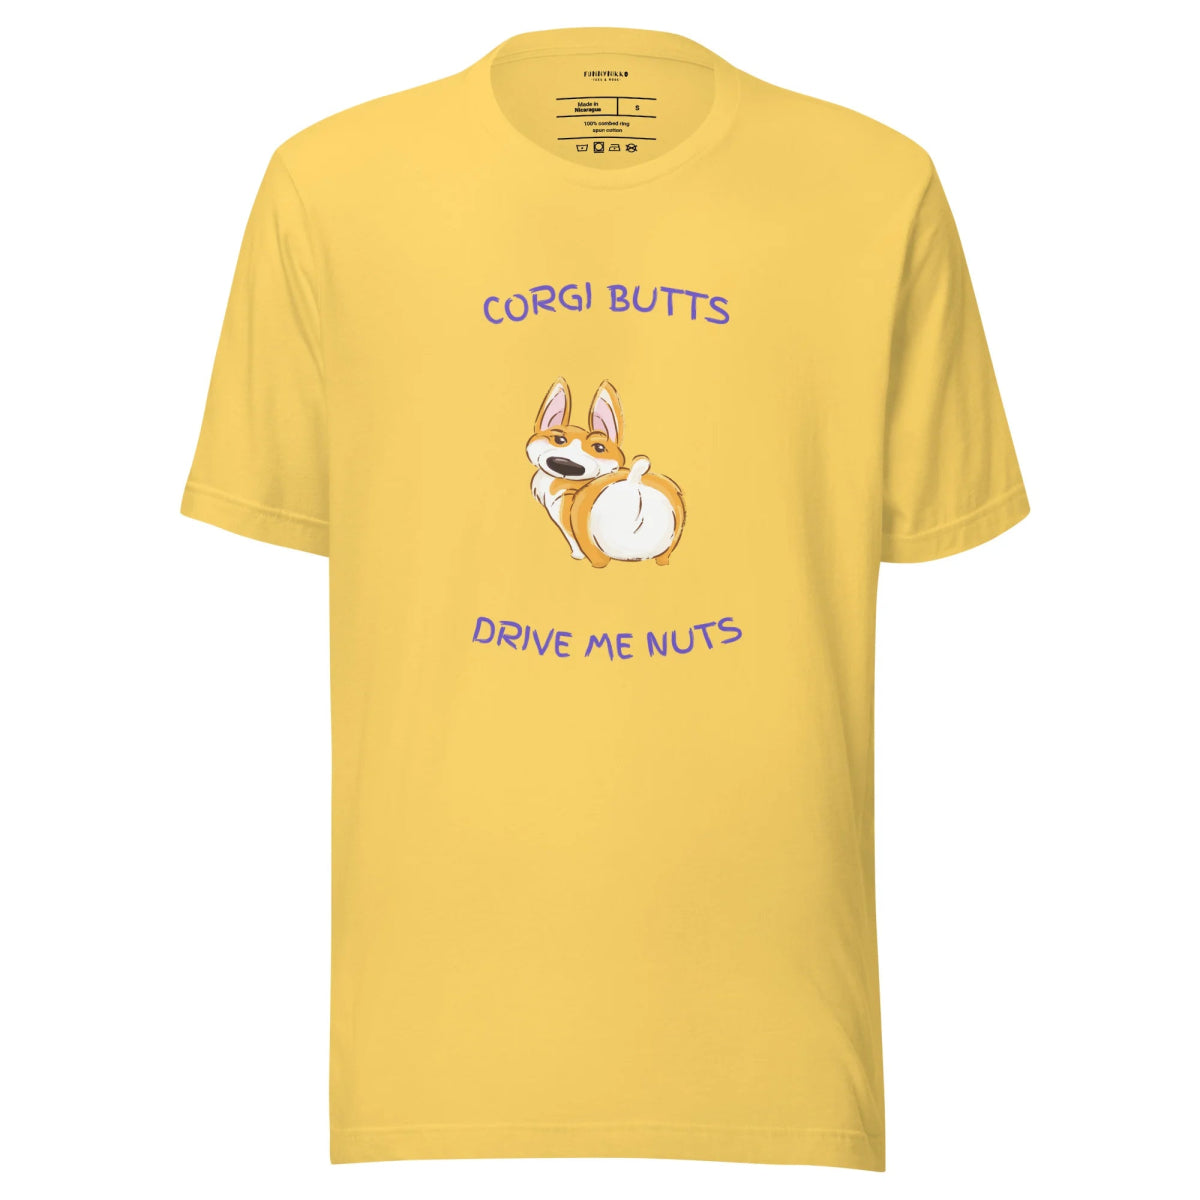 The Corgi Butts Staple T-Shirt - Funny Nikko